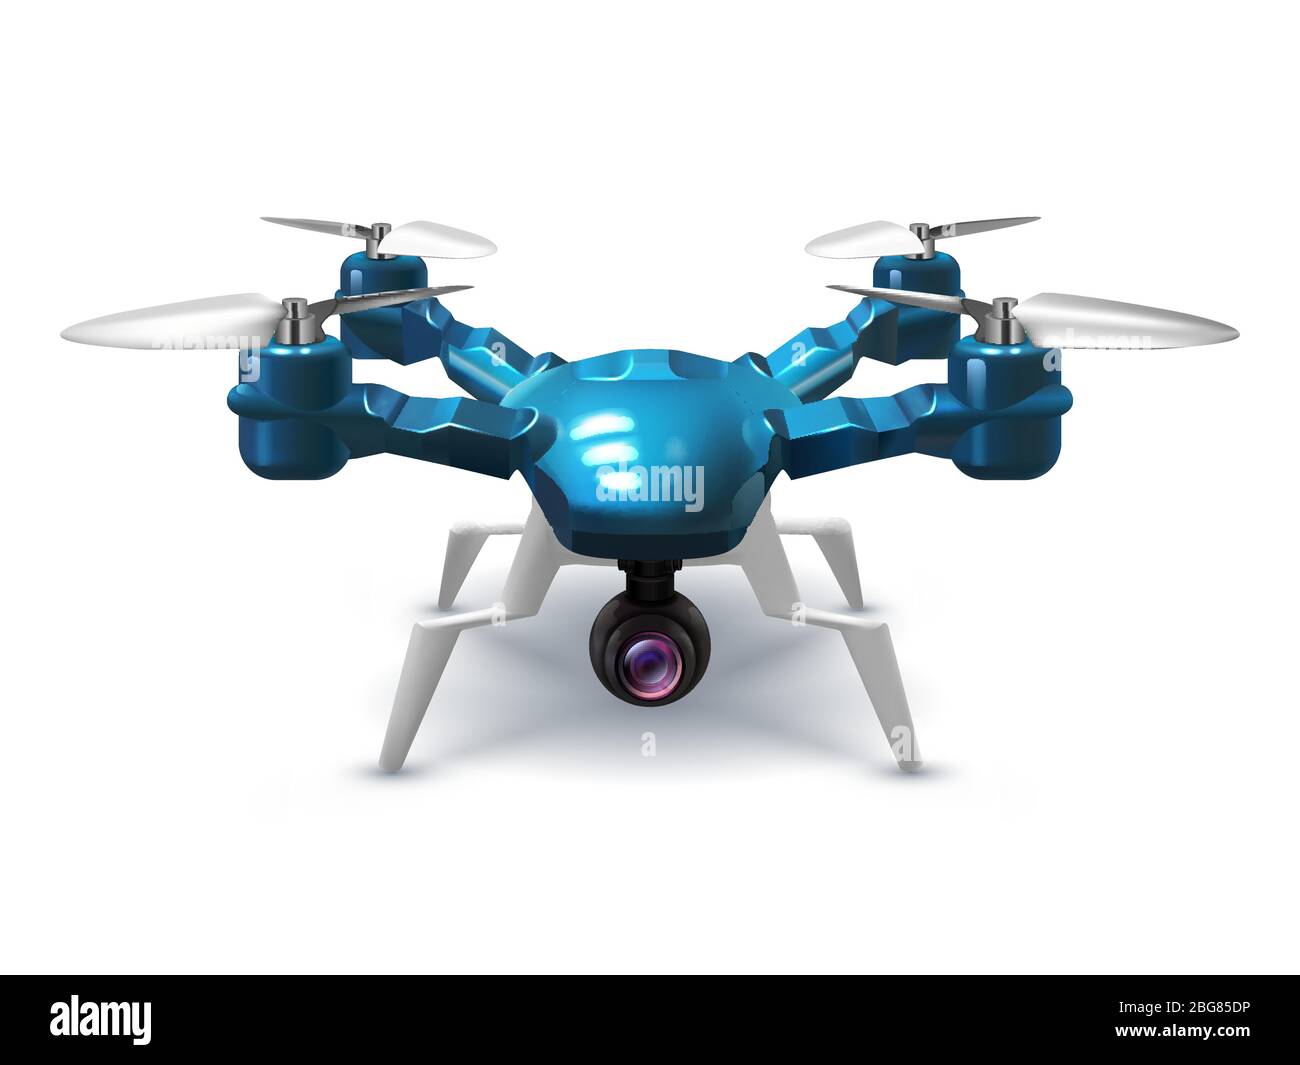 Drone realistico senza pilota con videocamera di registrazione. Copter con telecomando 3d Vector Illustration. Dispositivo antenna remota con elica Illustrazione Vettoriale